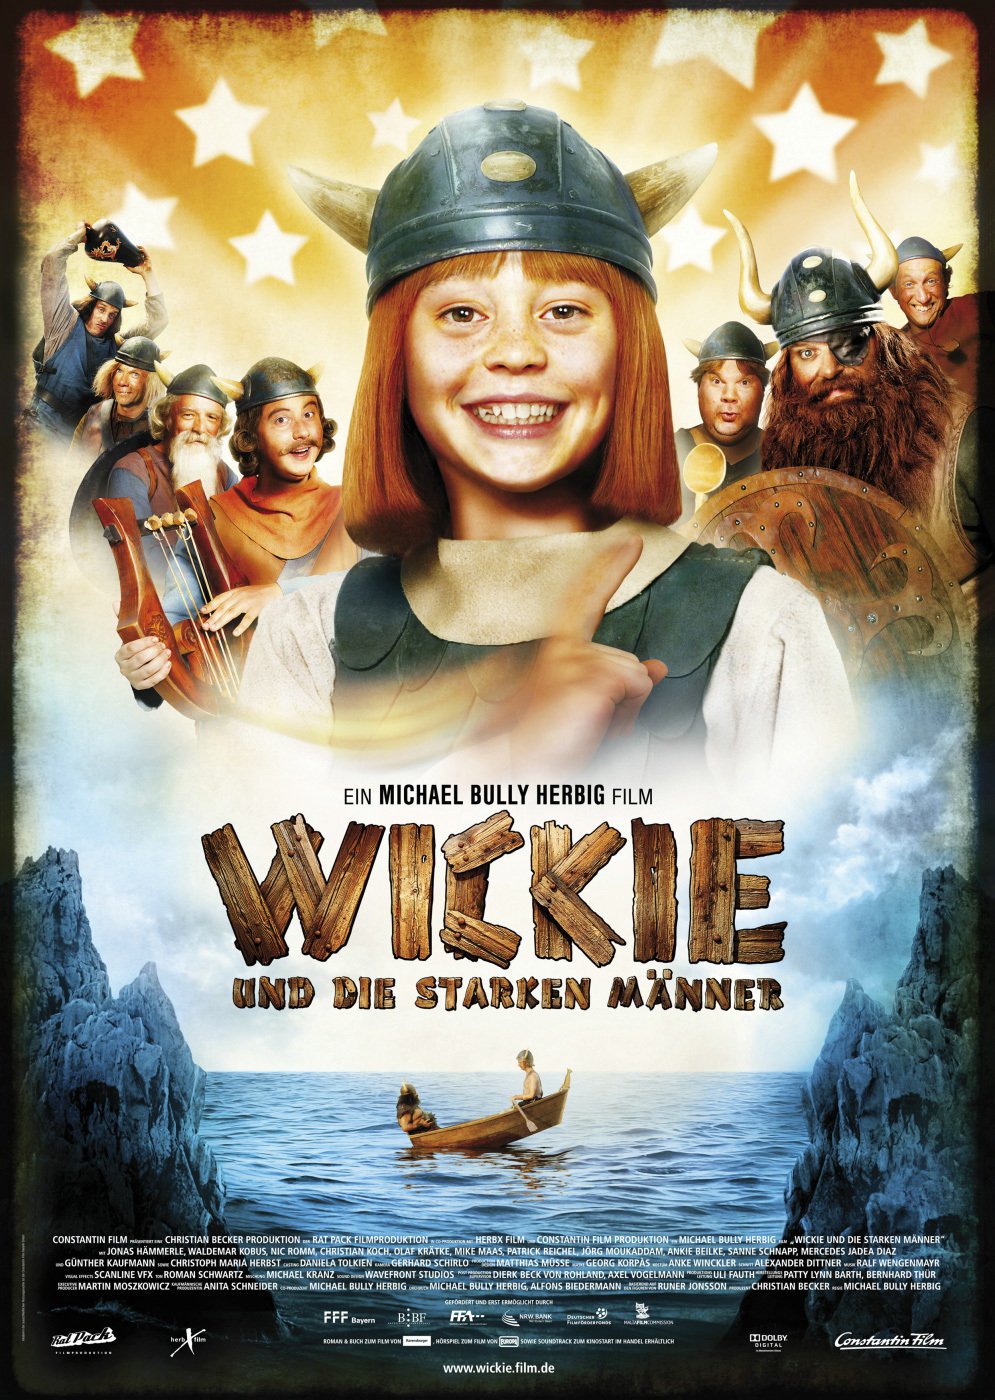 Wickie de Viking - still